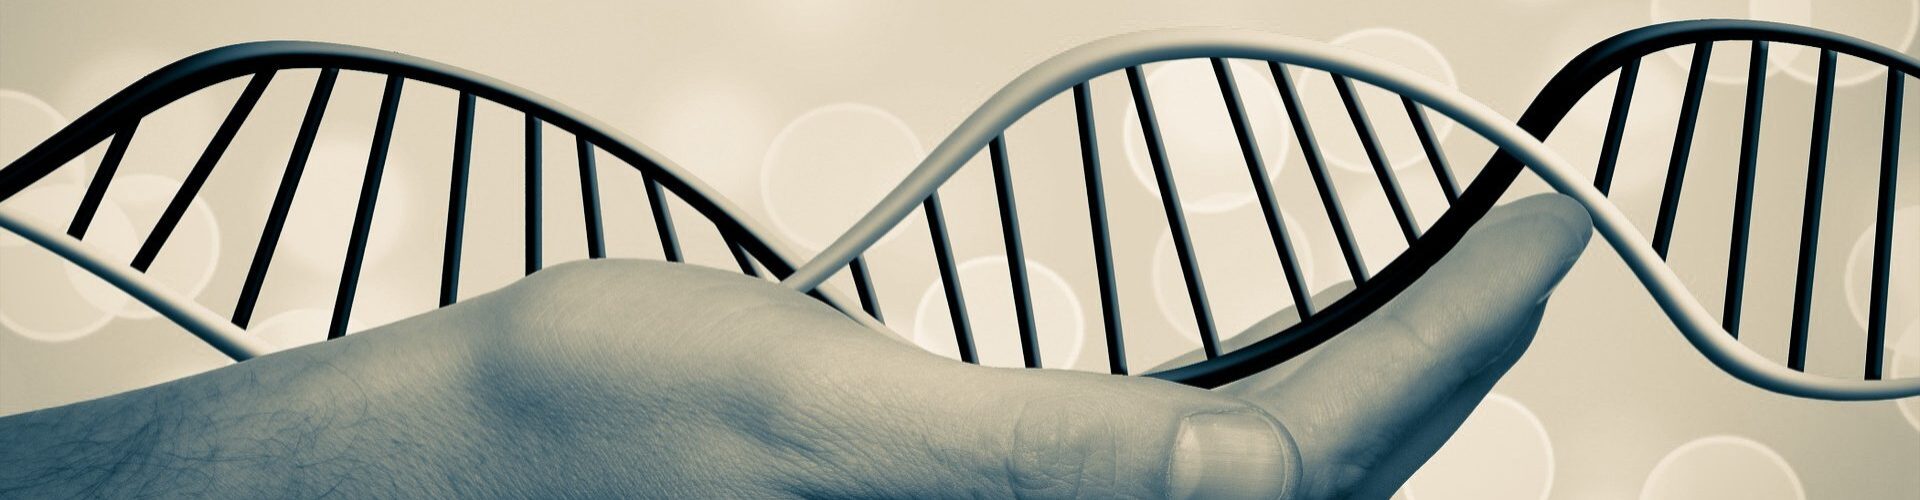 Découvrir Vos Origines : Les regroupements génétiques de 23andMe, Ancestry et MyHeritage